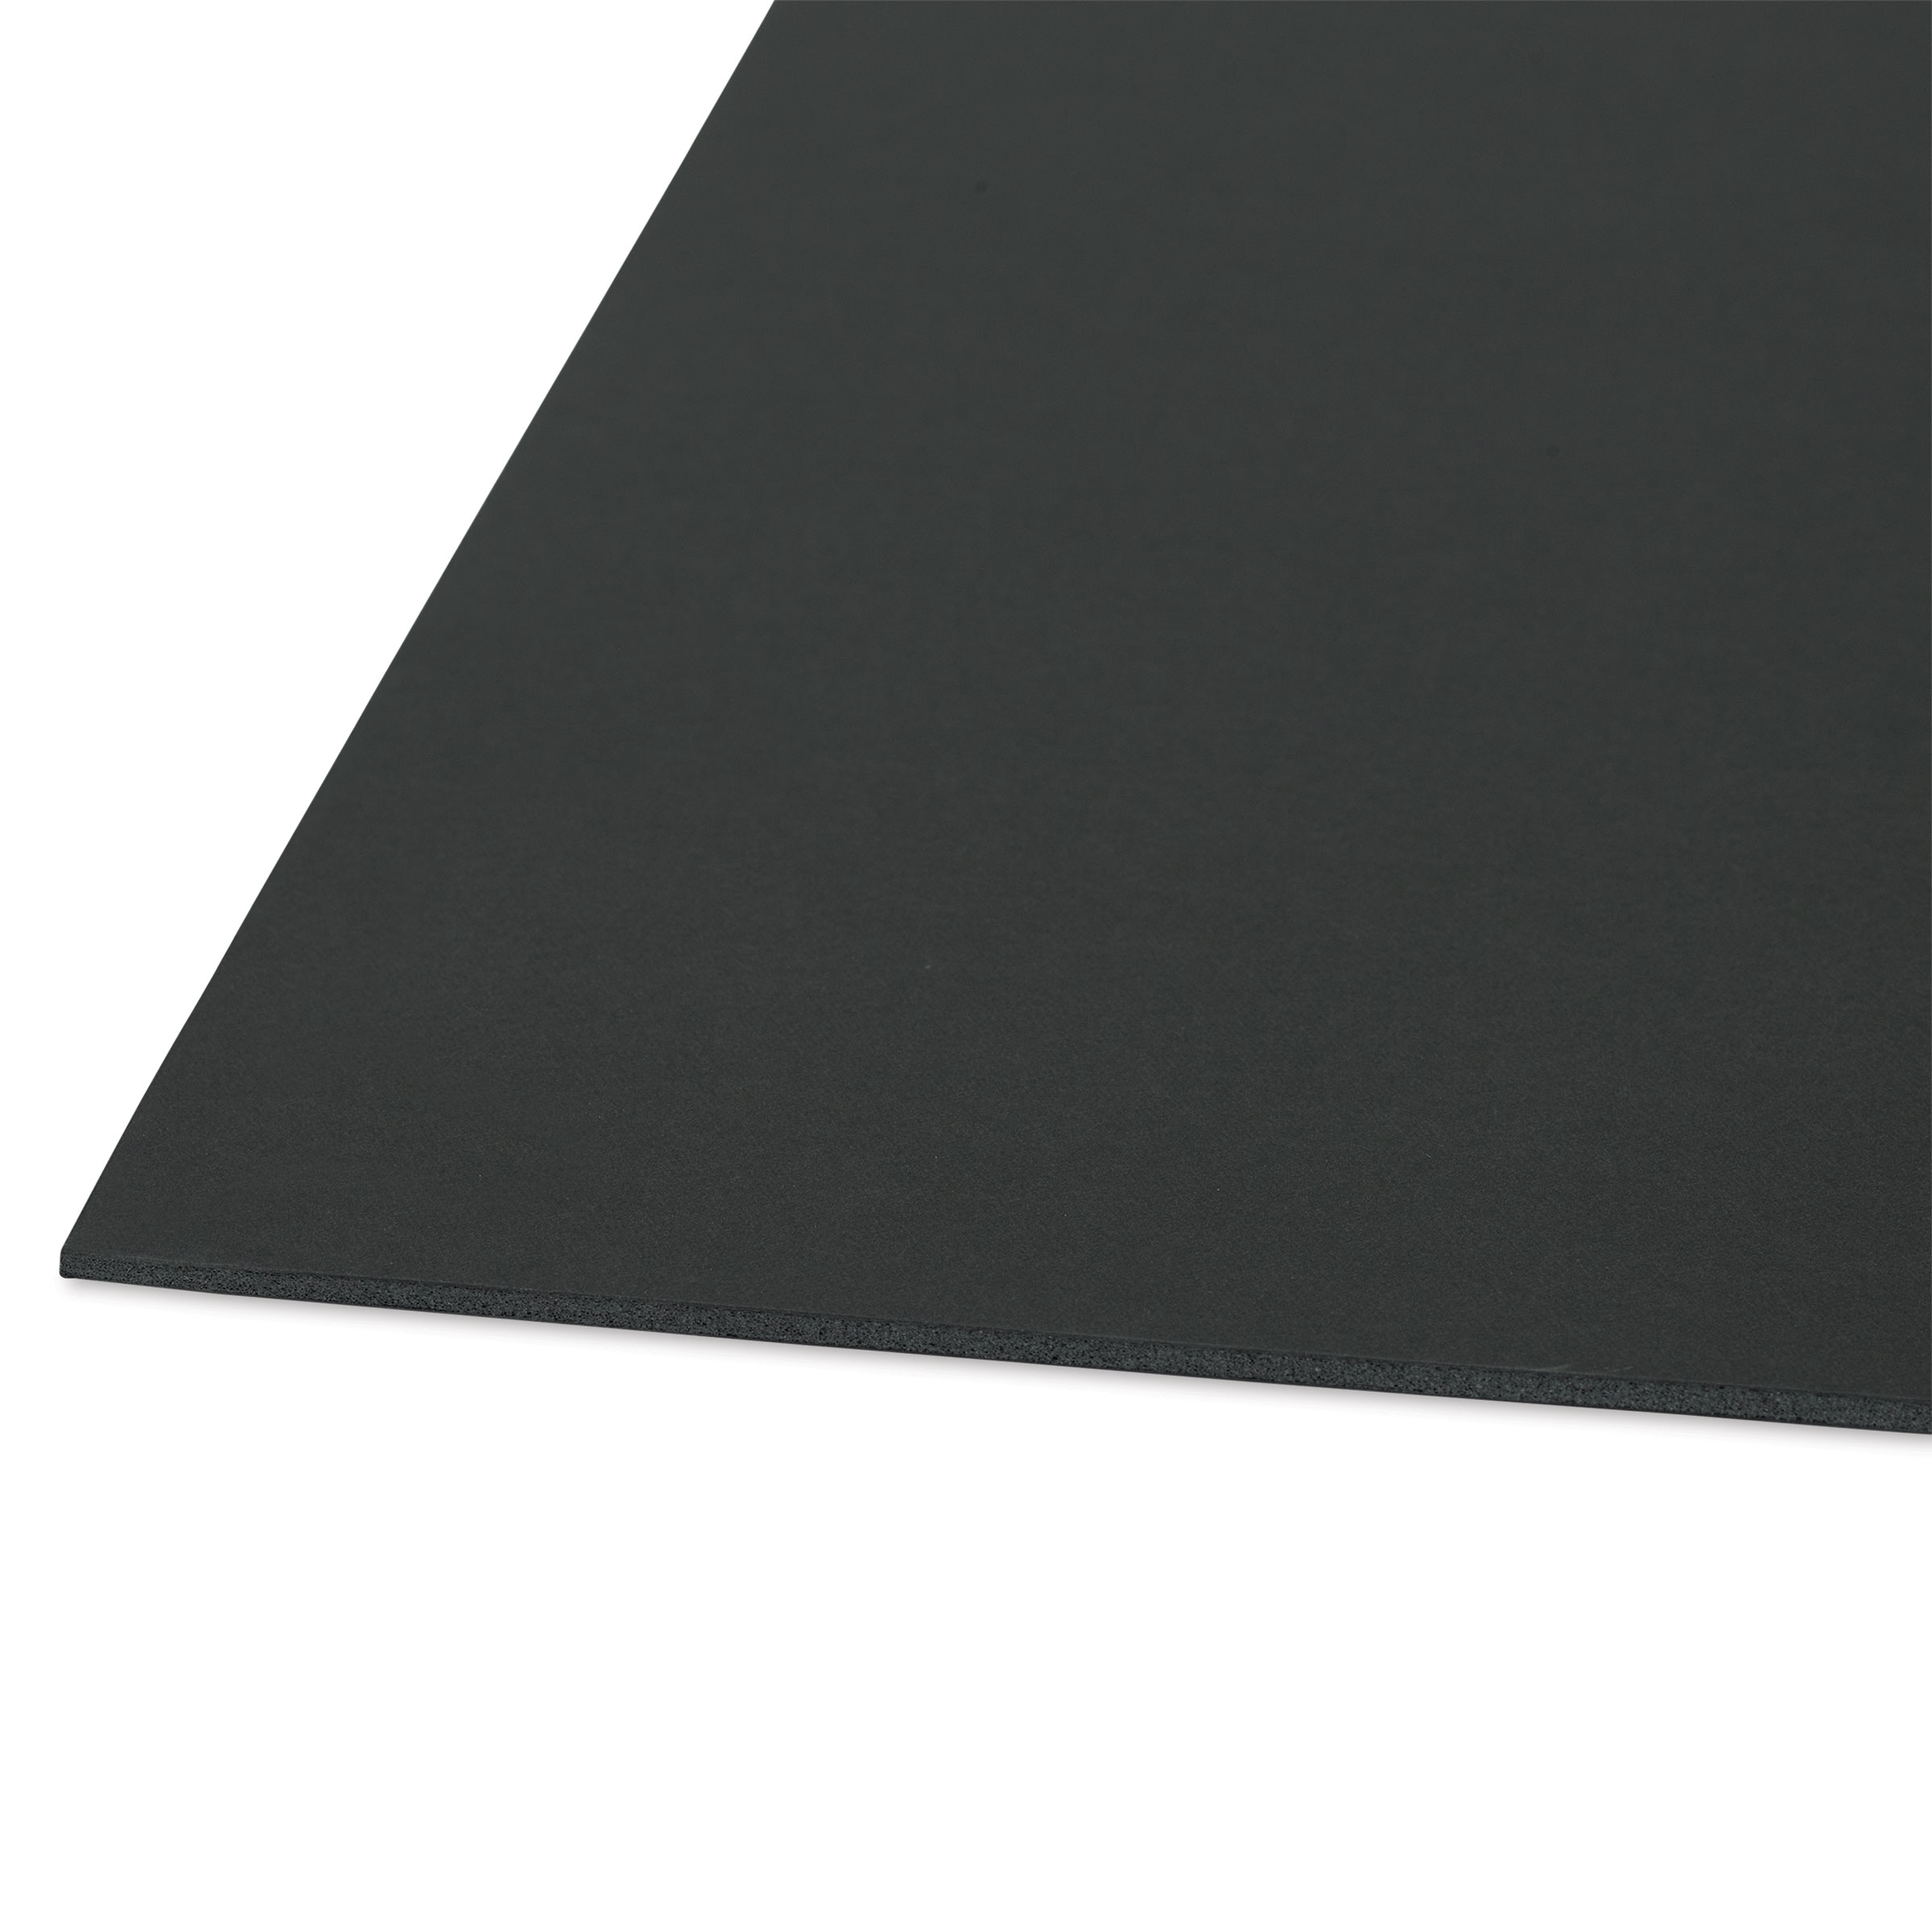 3/16 Black Buffered Foam Core Boards :24 x 36 